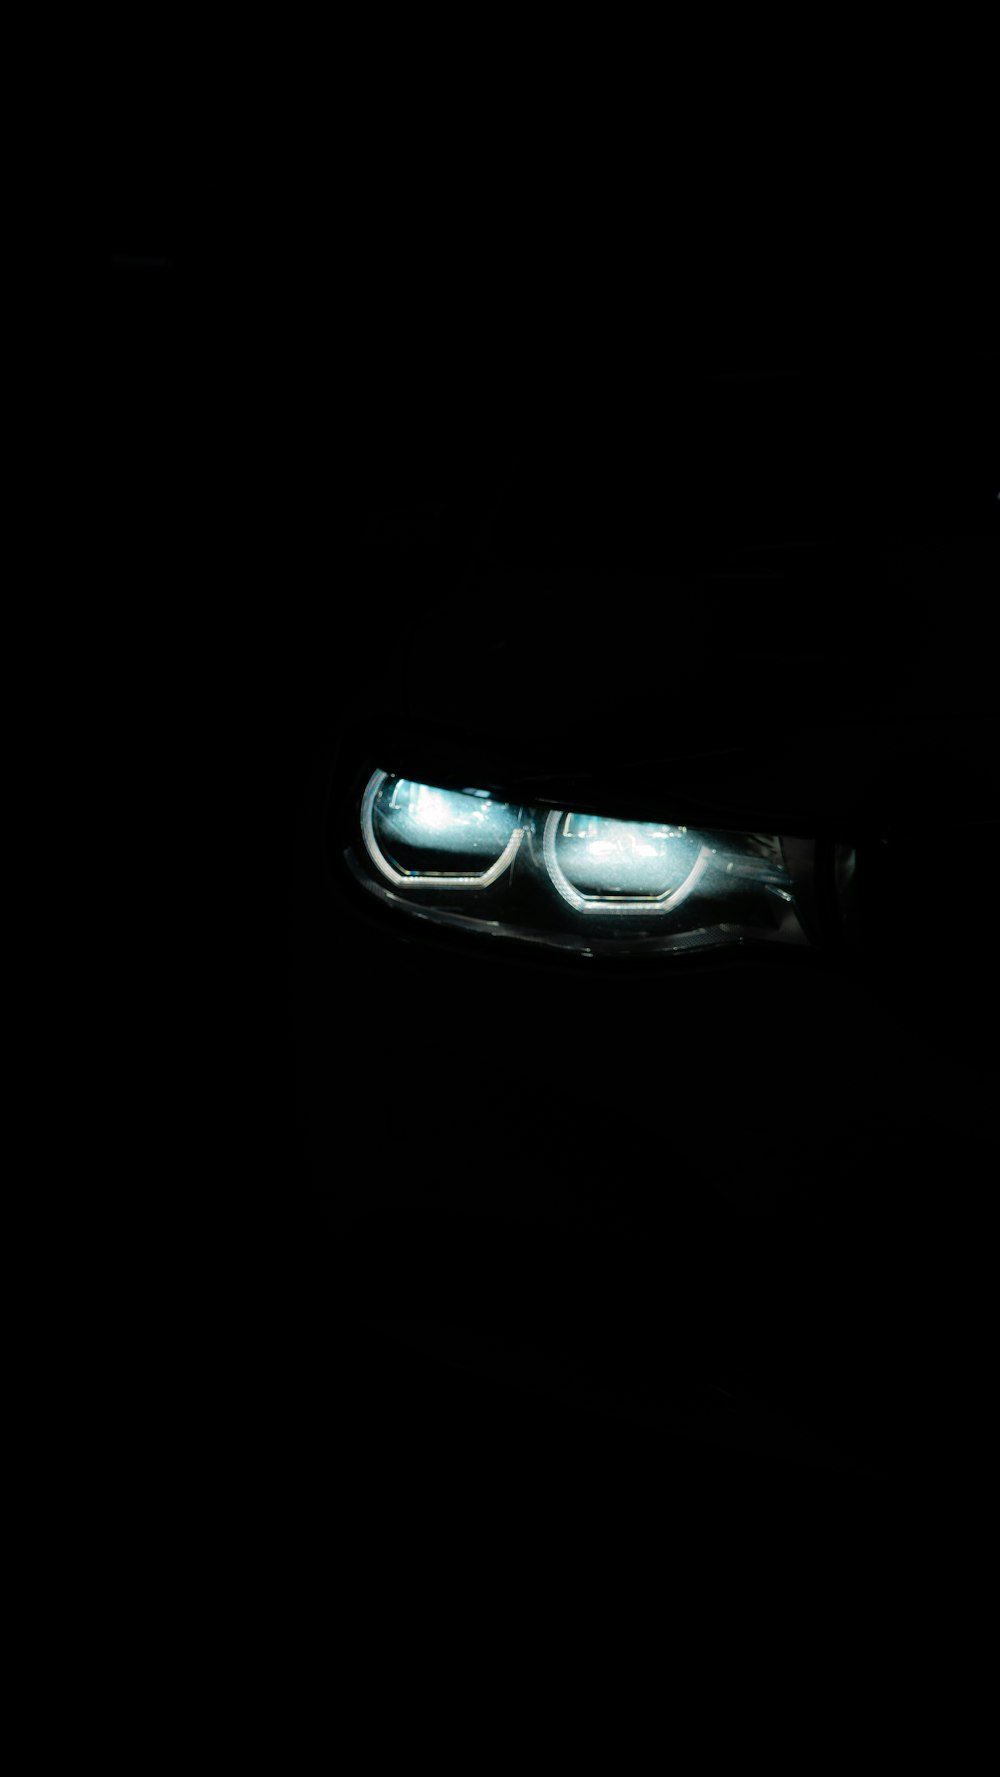 어둠 속에서 자동차의 헤드라이트